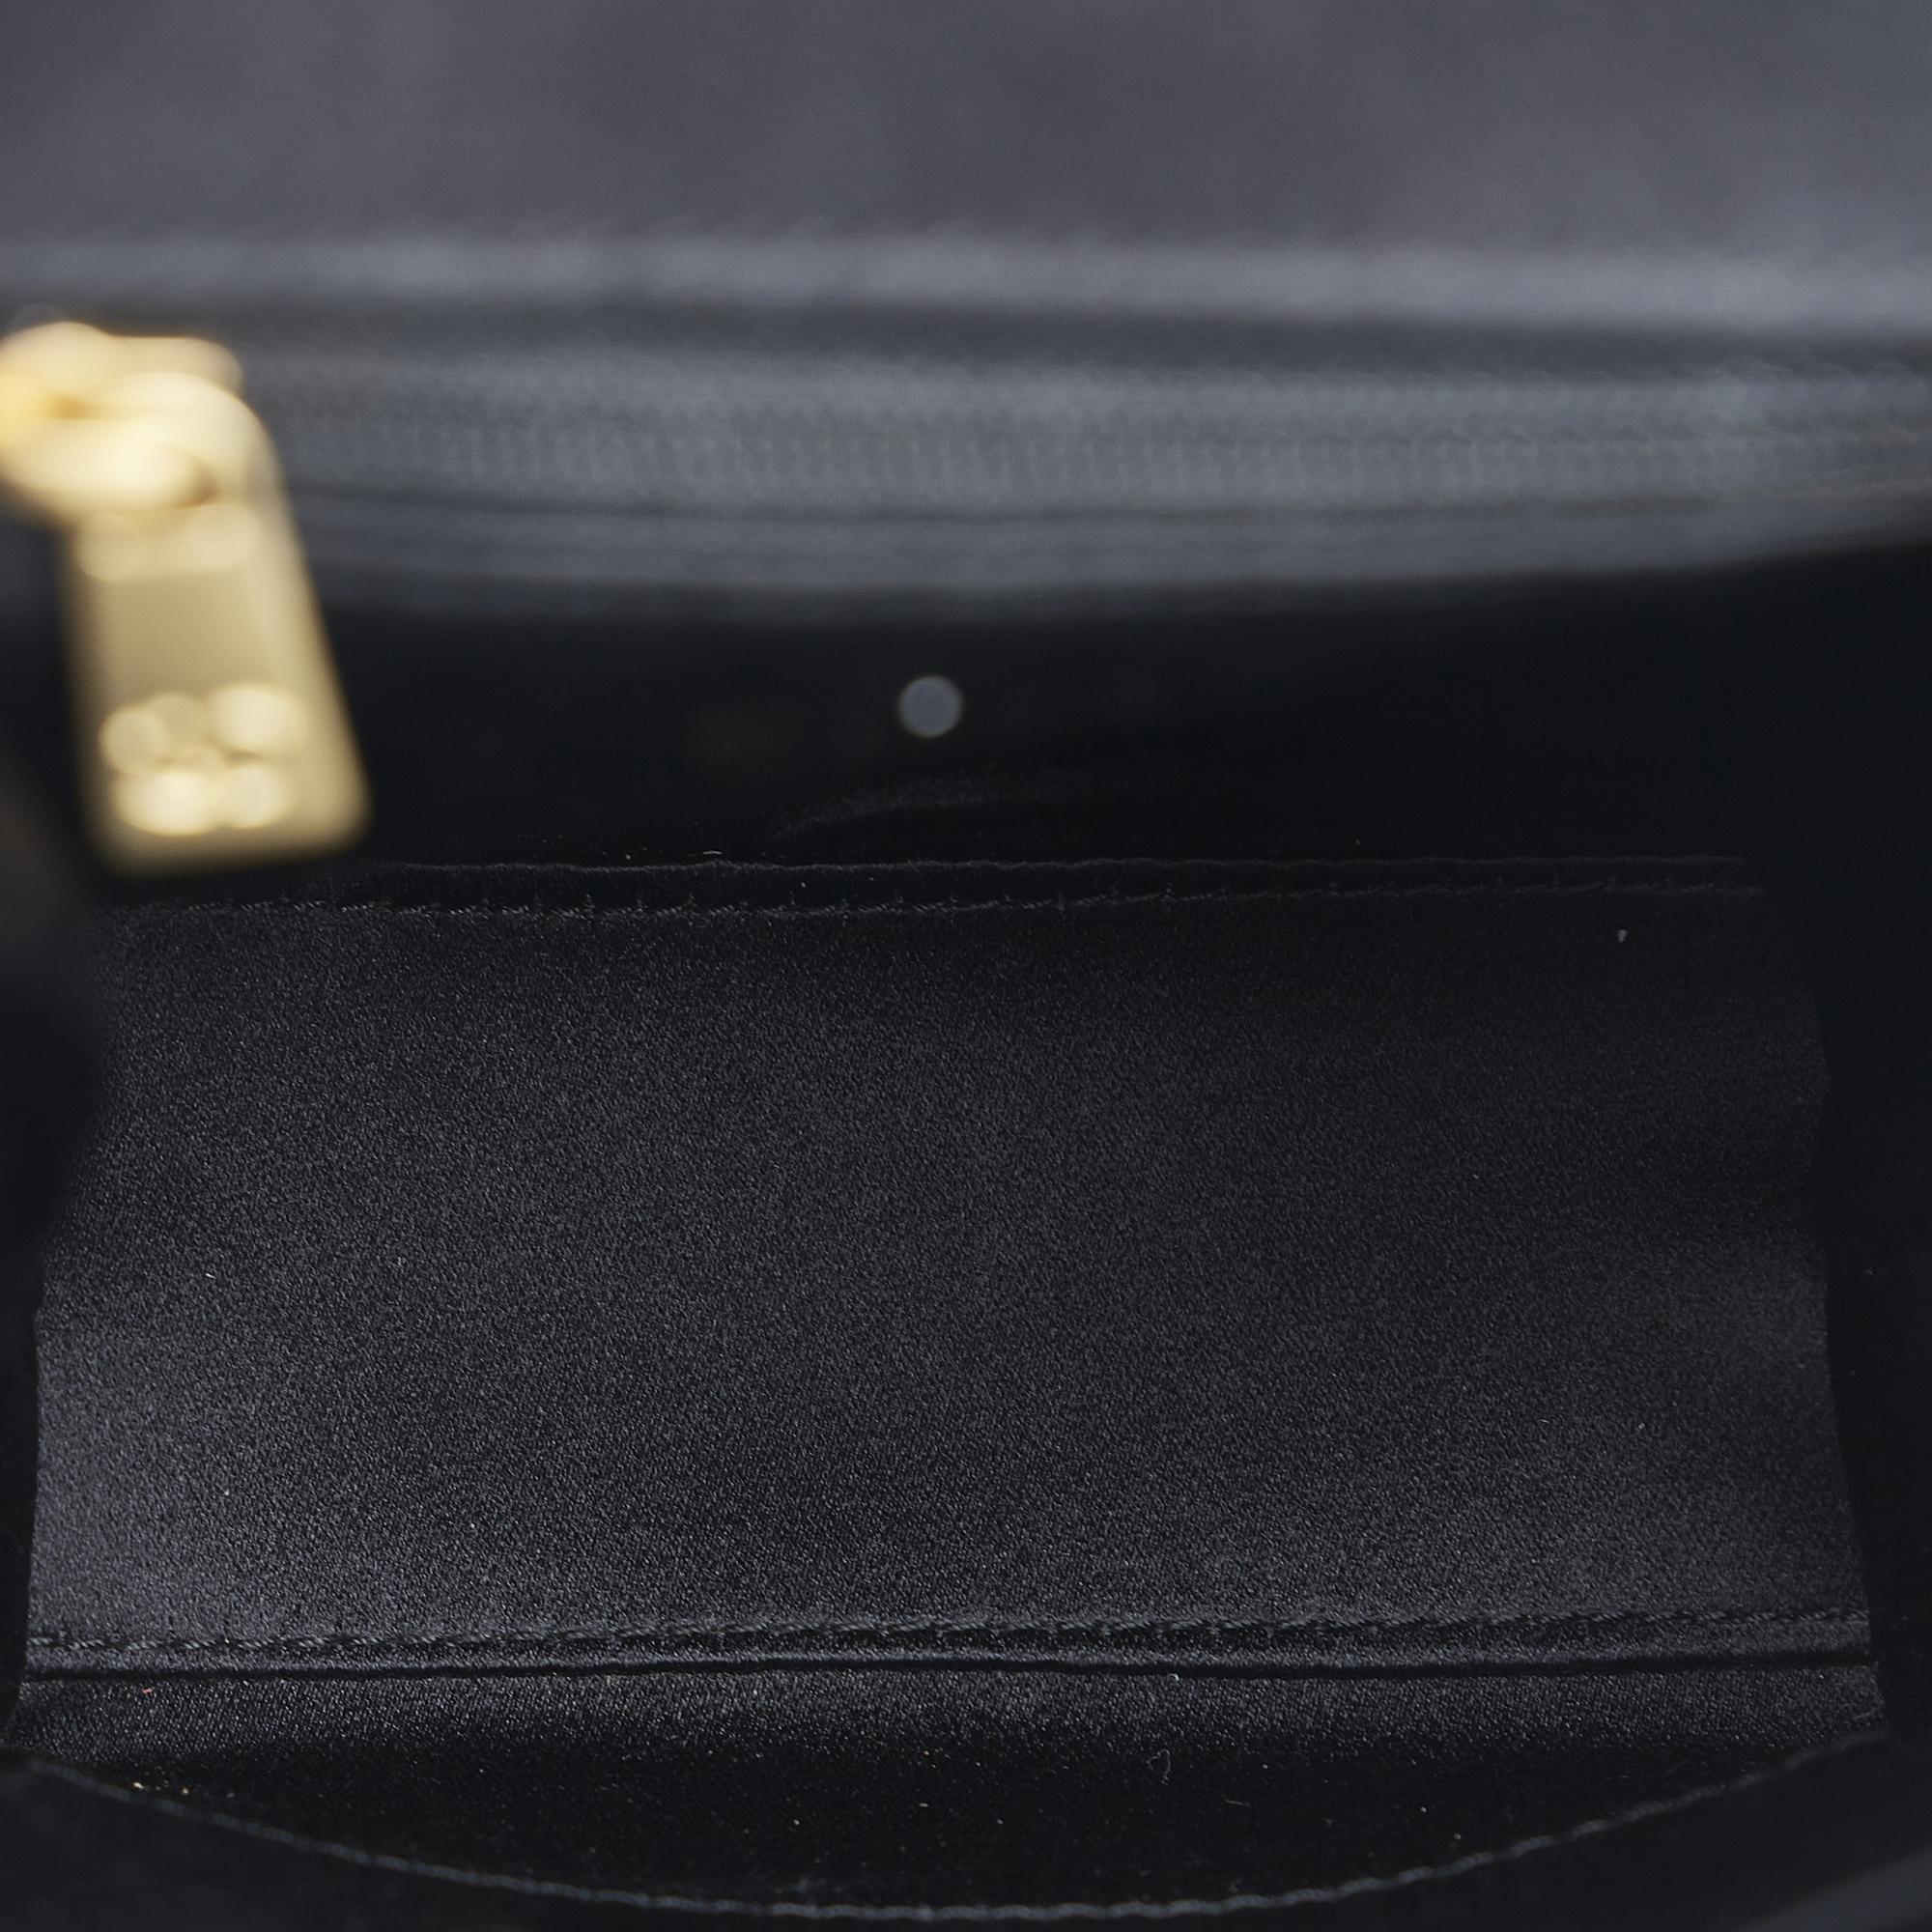 Chanel Black CC Matelasse Bracelet Handbag